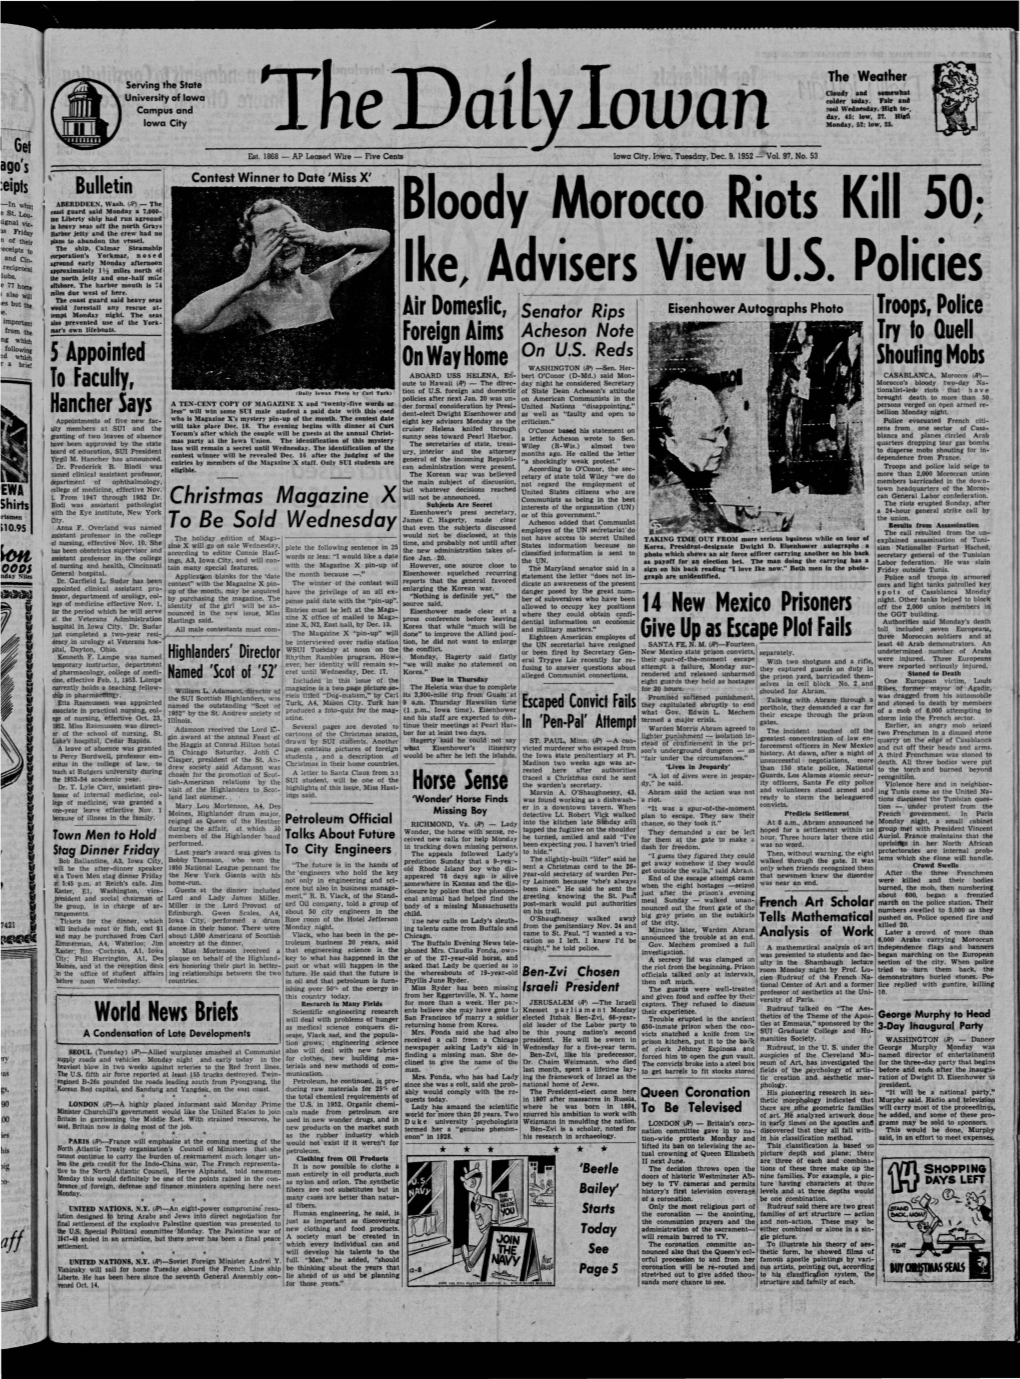 Daily Iowan (Iowa City, Iowa), 1952-12-09